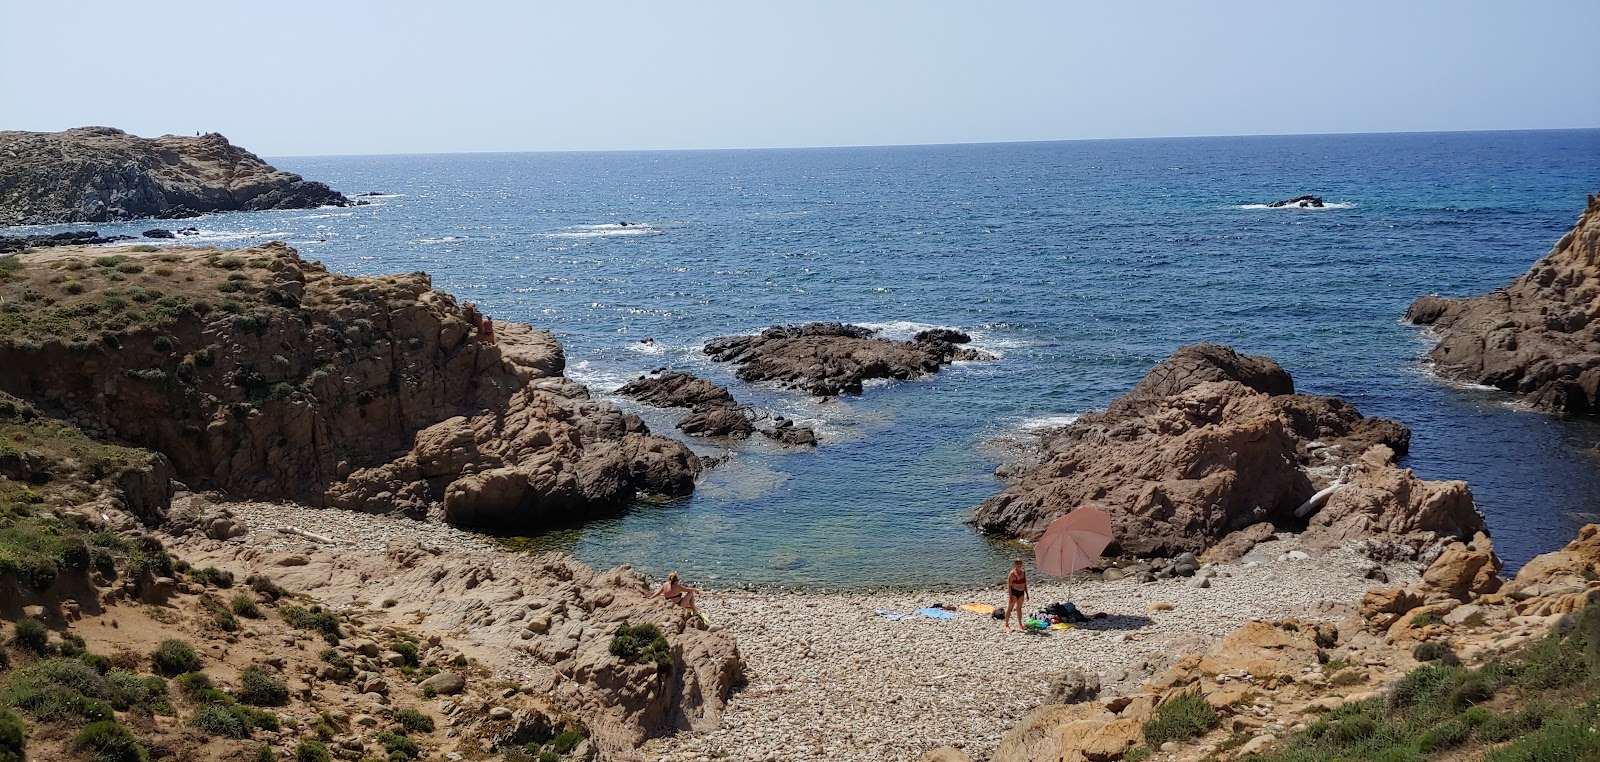 Valokuva Spiaggia di Capo Pecoraista. pinnalla kivet:n kanssa